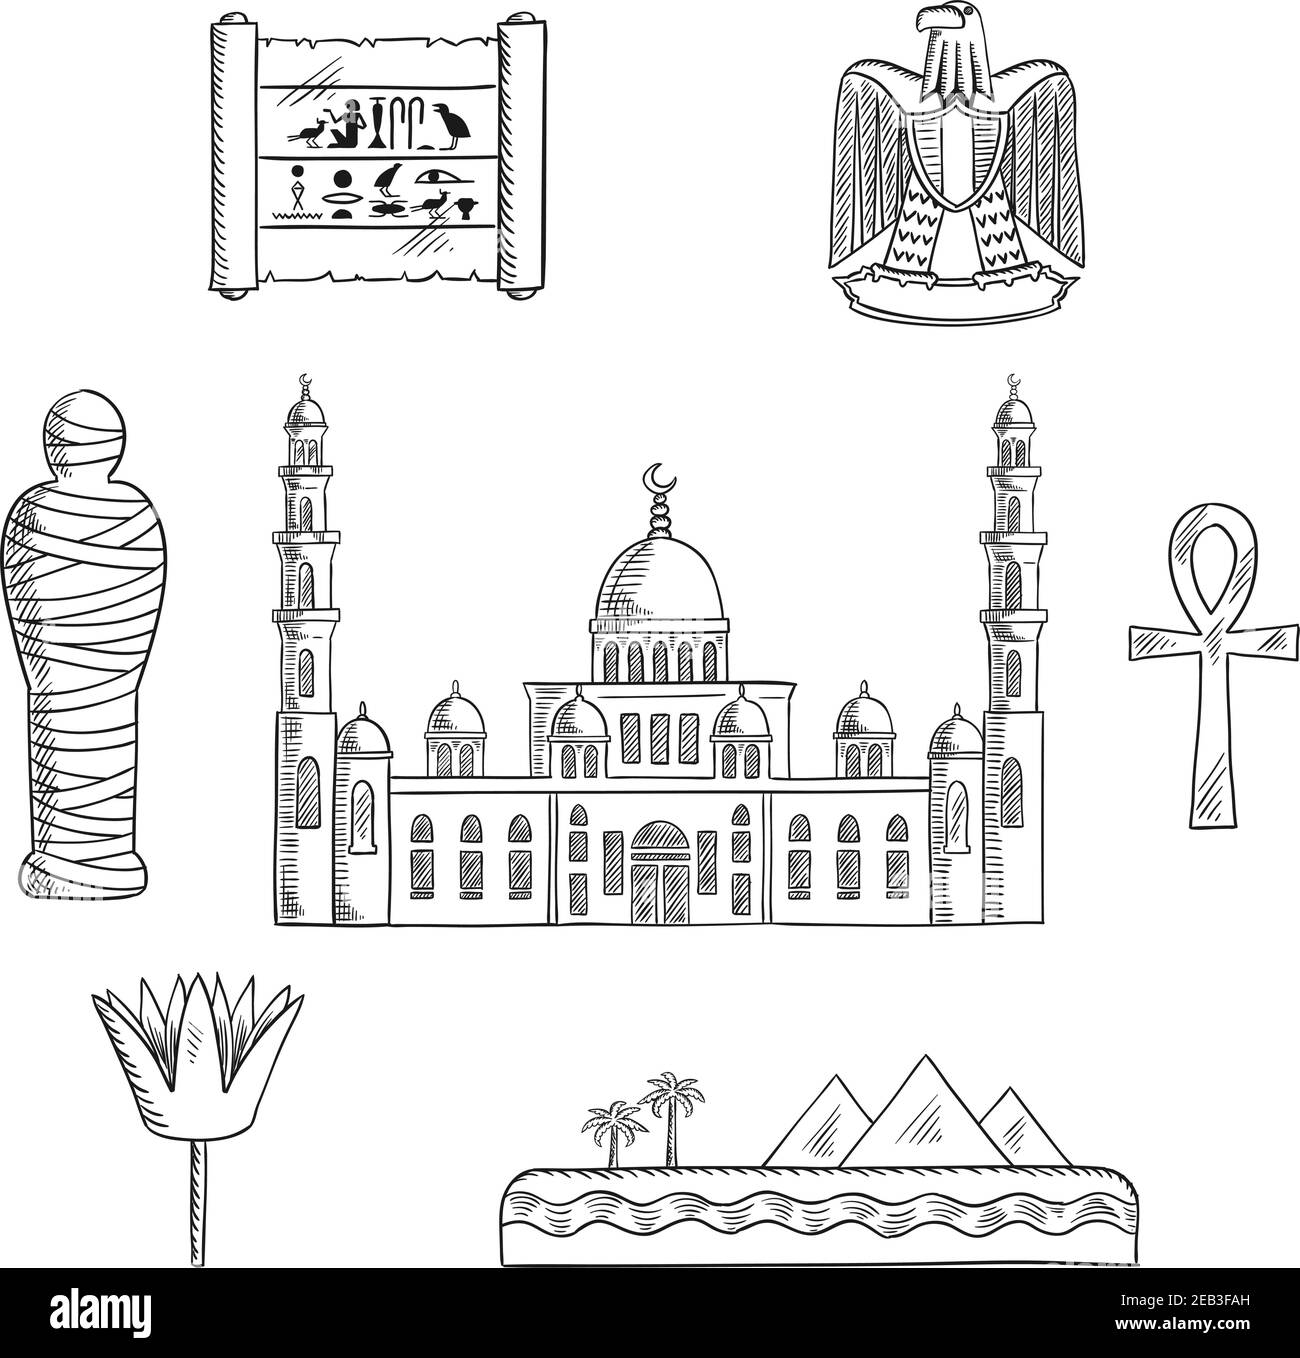 Ägypten Reise skizzierte Ikonen mit Kairo Moschee, pharao Mumie, Wüstenlandschaft mit Pyramiden und Meer, heilige Lotusblume, Papyrus mit Hieroglyphen, Stock Vektor